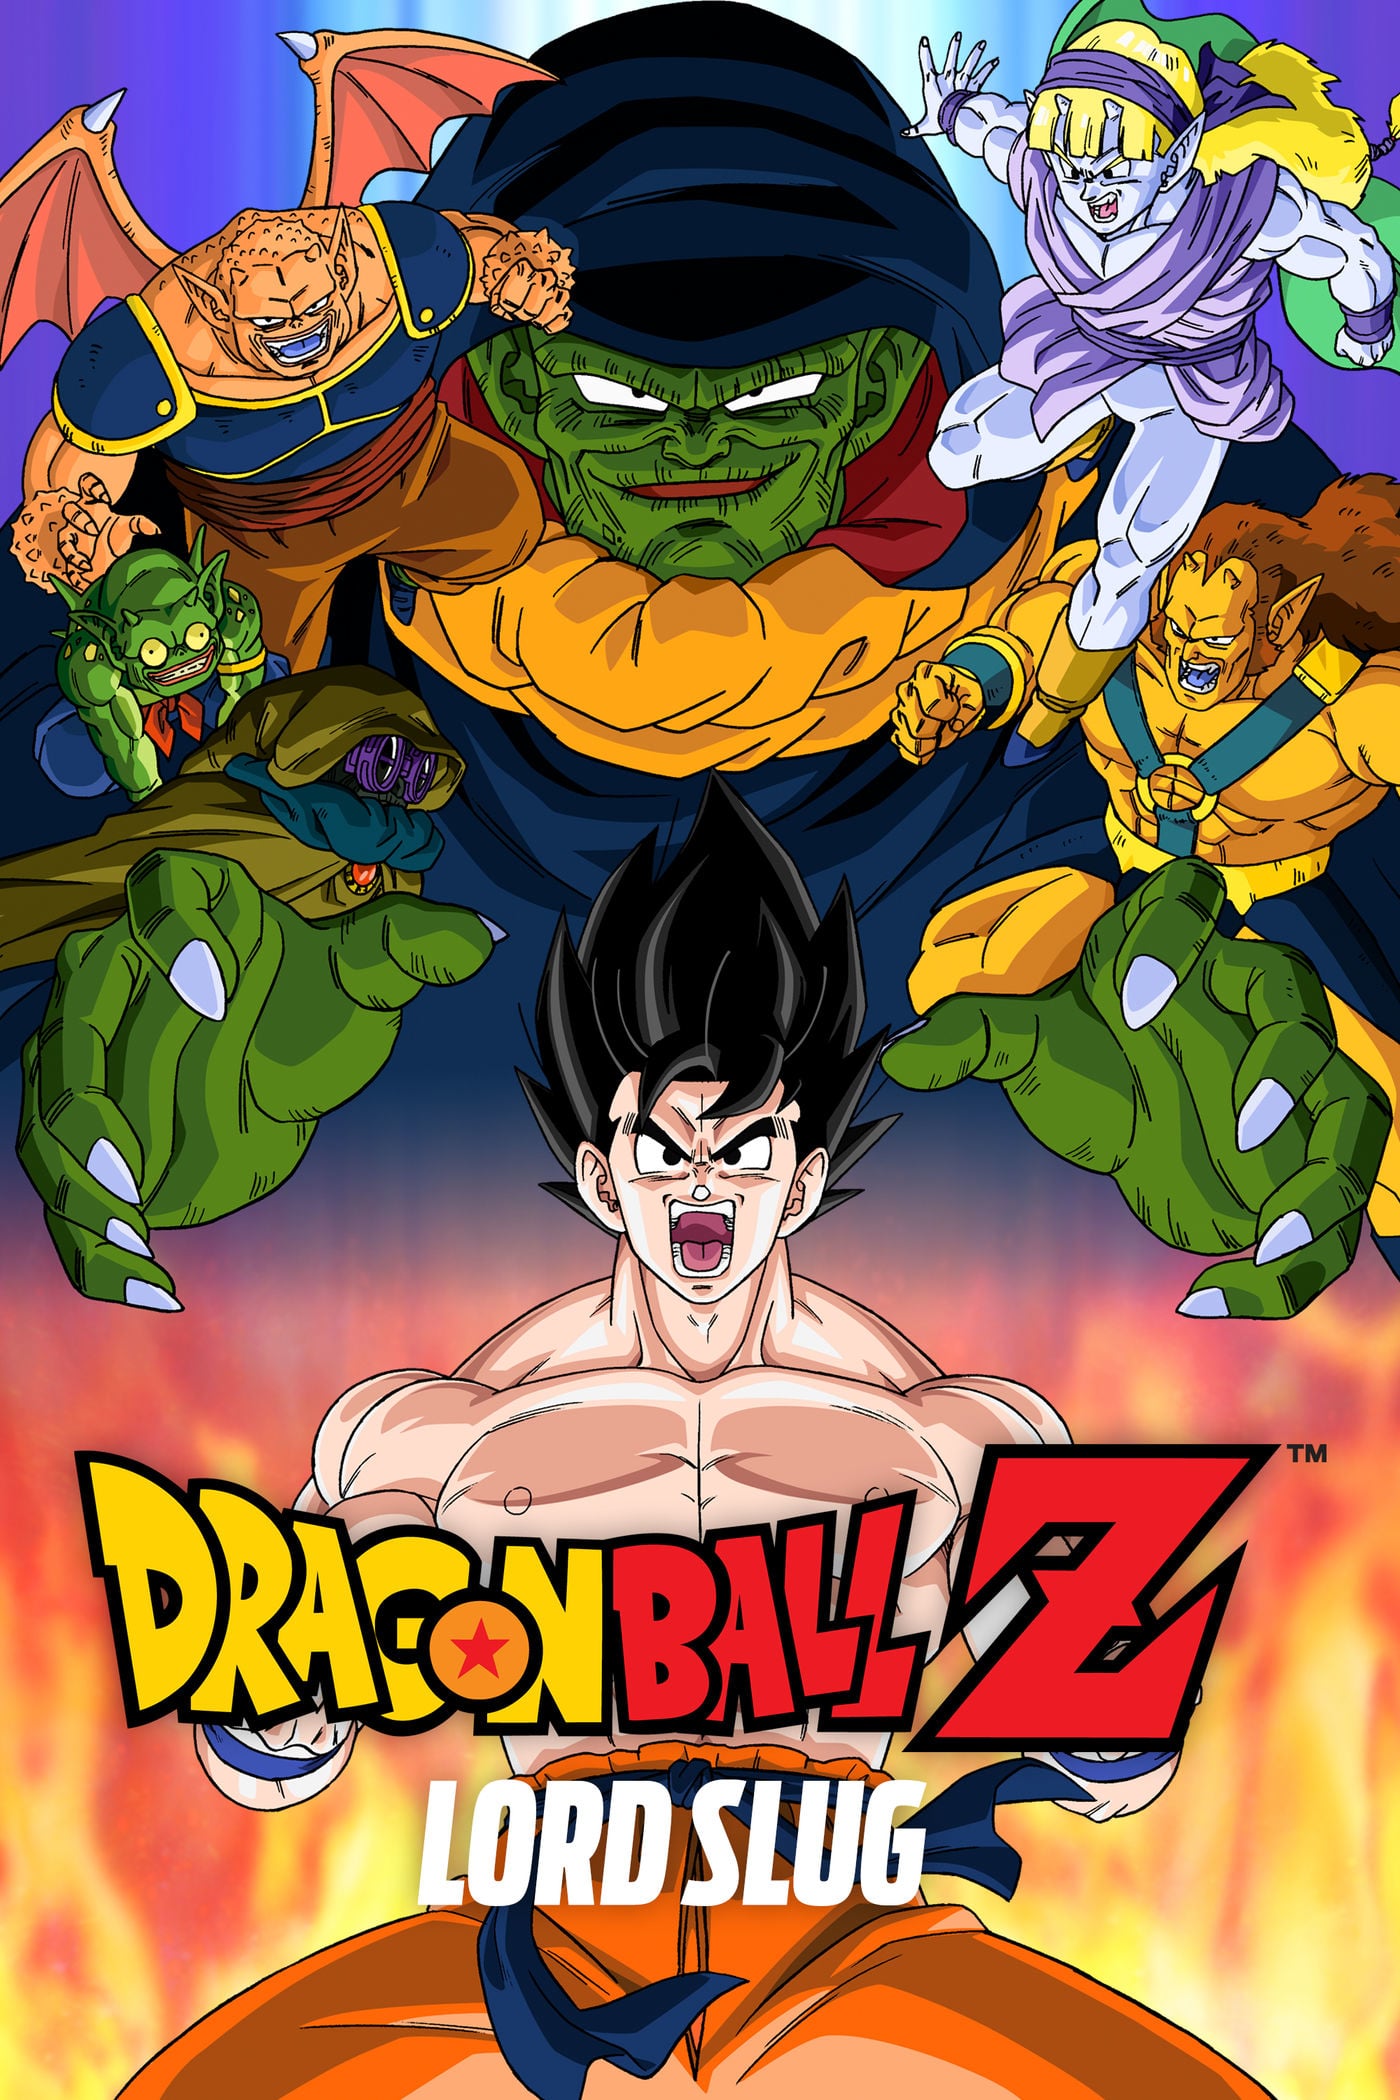 Dragon Ball Z e Super - Lista completa de filmes - Critical Hits